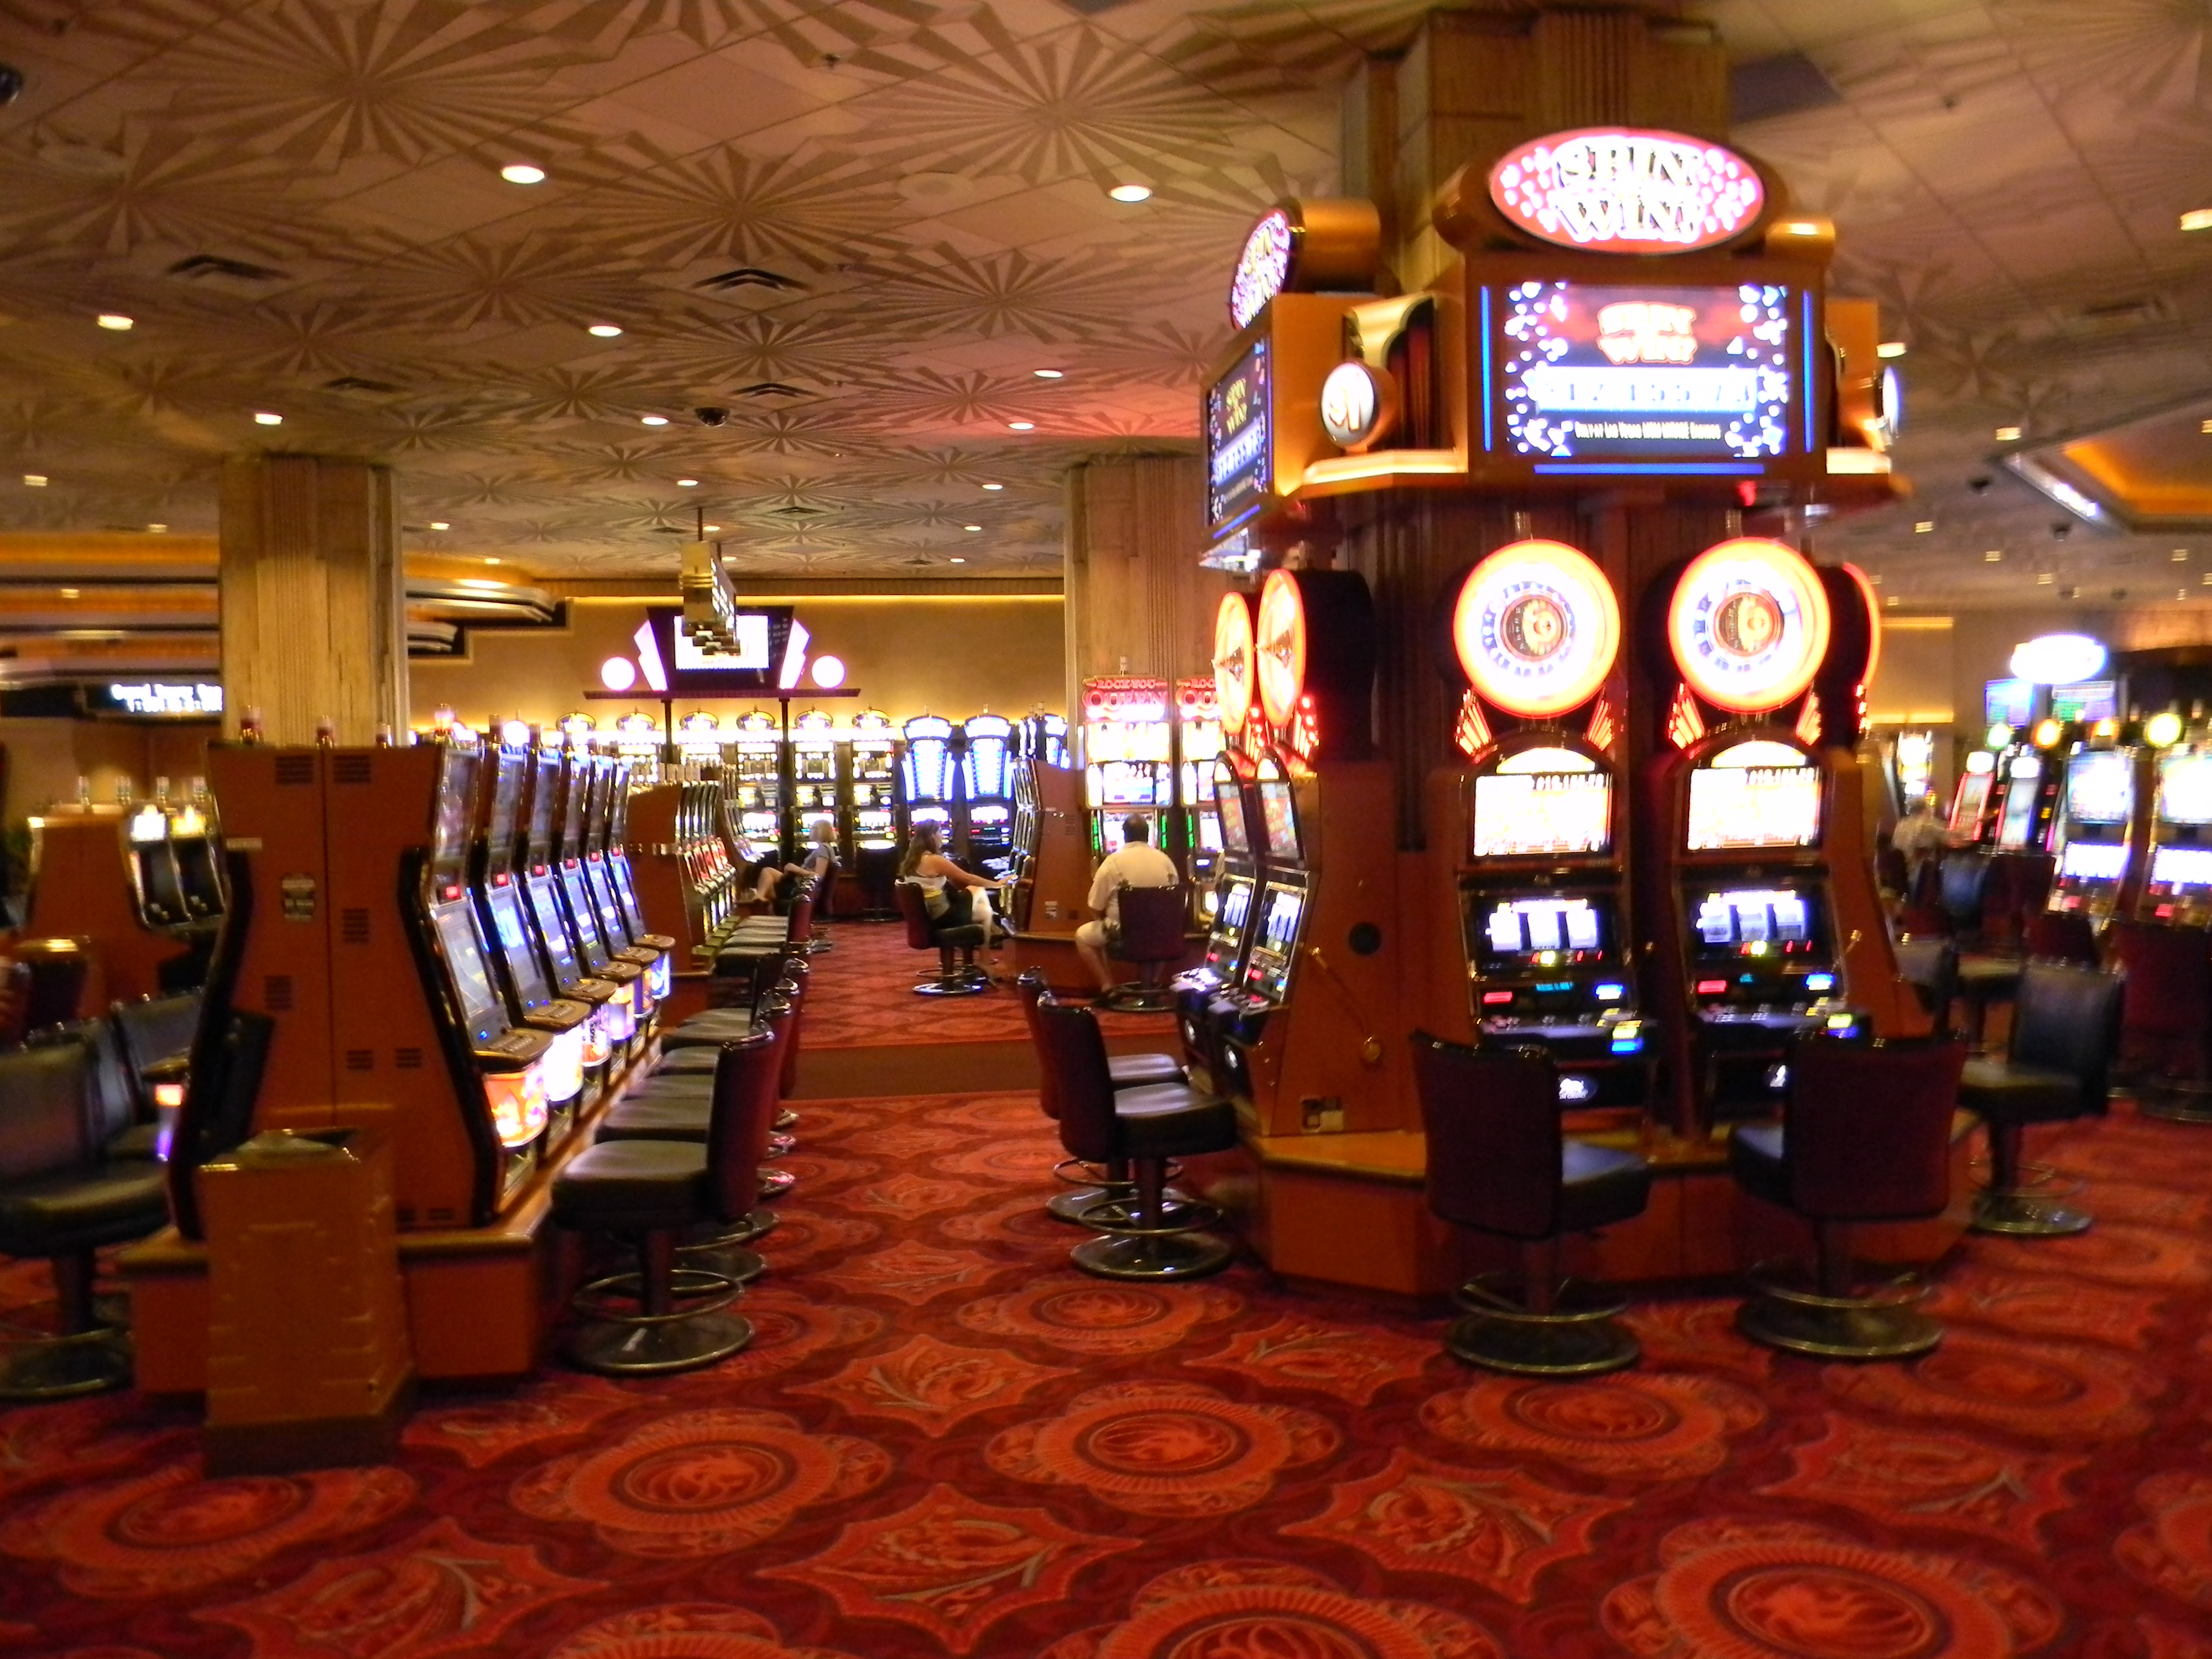 Grand Vegas Casino